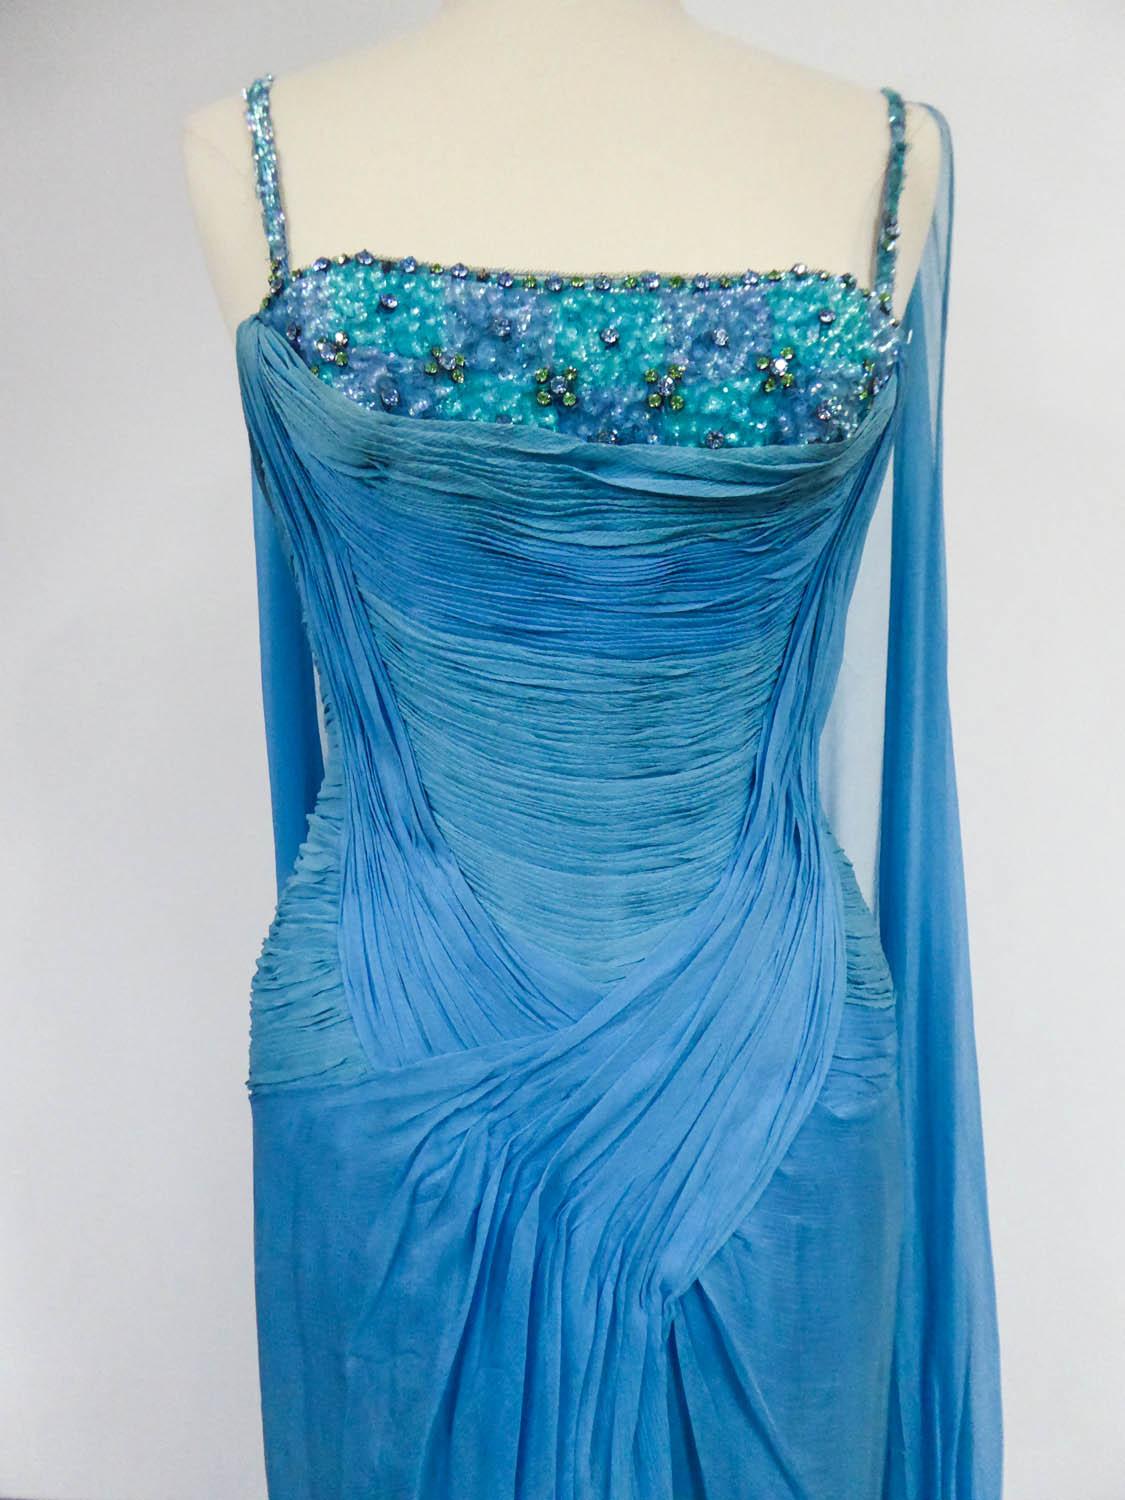 CIRCA 1960/1970
Frankreich

Haute Couture-Abendkleid des Hauses Carven Designer aus blauem Seidenmusselin aus den 60er/70er Jahren. Bustier mit dünnen Trägern und großem, tiefem Ausschnitt, bestickt mit blauen und grünen Pailletten in Rosen und